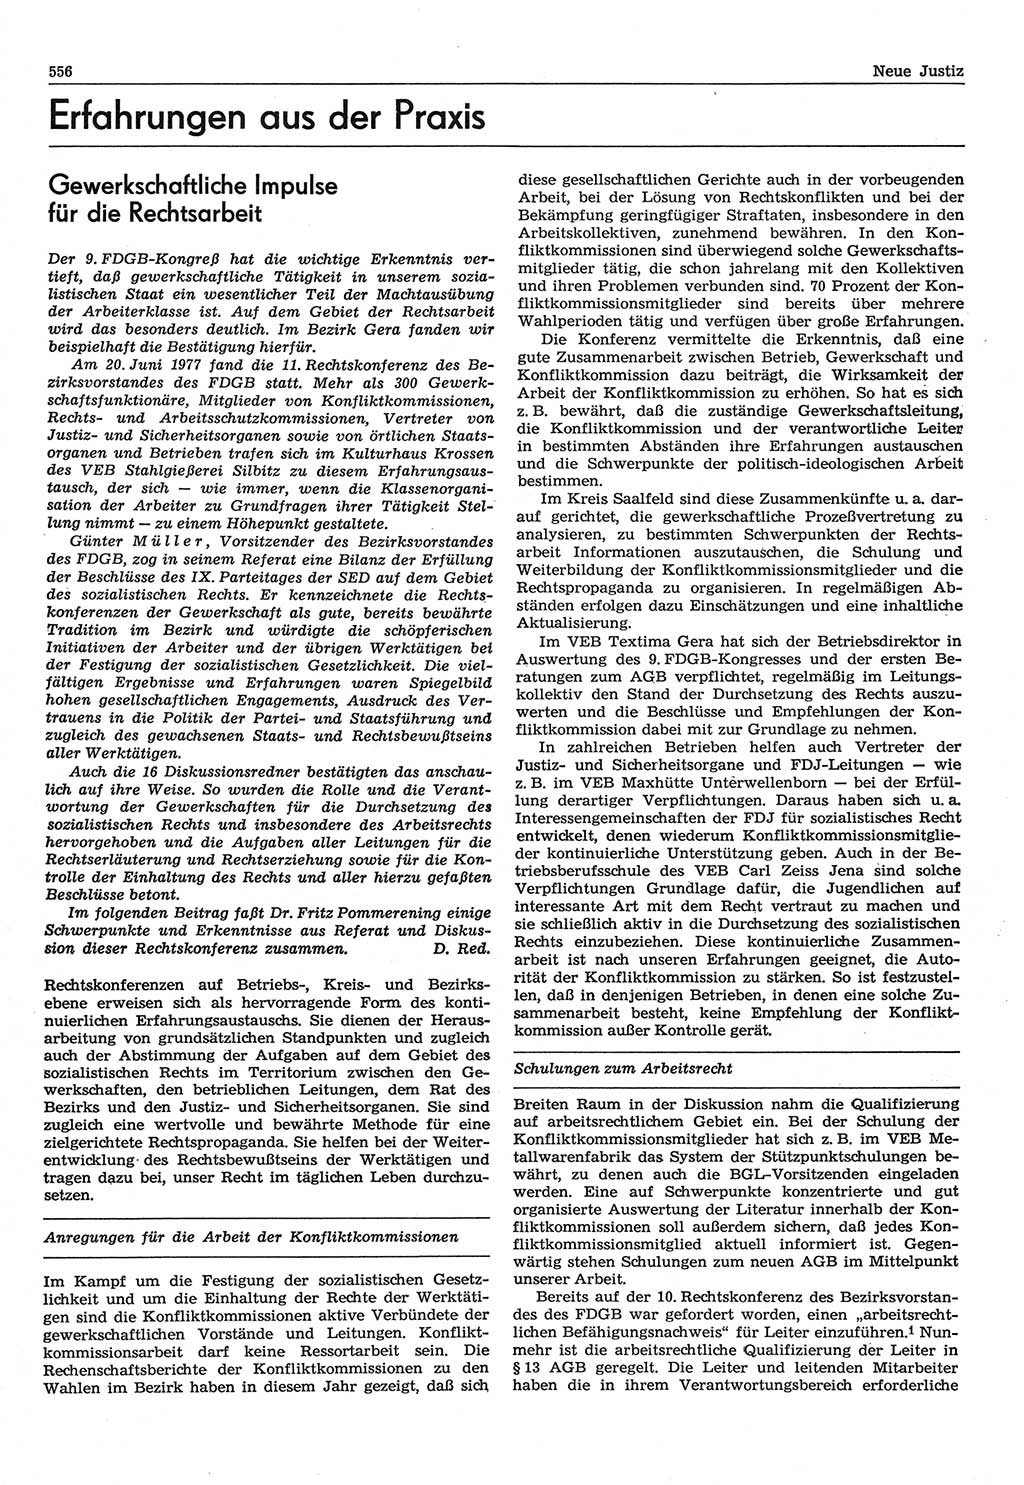 Neue Justiz (NJ), Zeitschrift für Recht und Rechtswissenschaft-Zeitschrift, sozialistisches Recht und Gesetzlichkeit, 31. Jahrgang 1977, Seite 556 (NJ DDR 1977, S. 556)